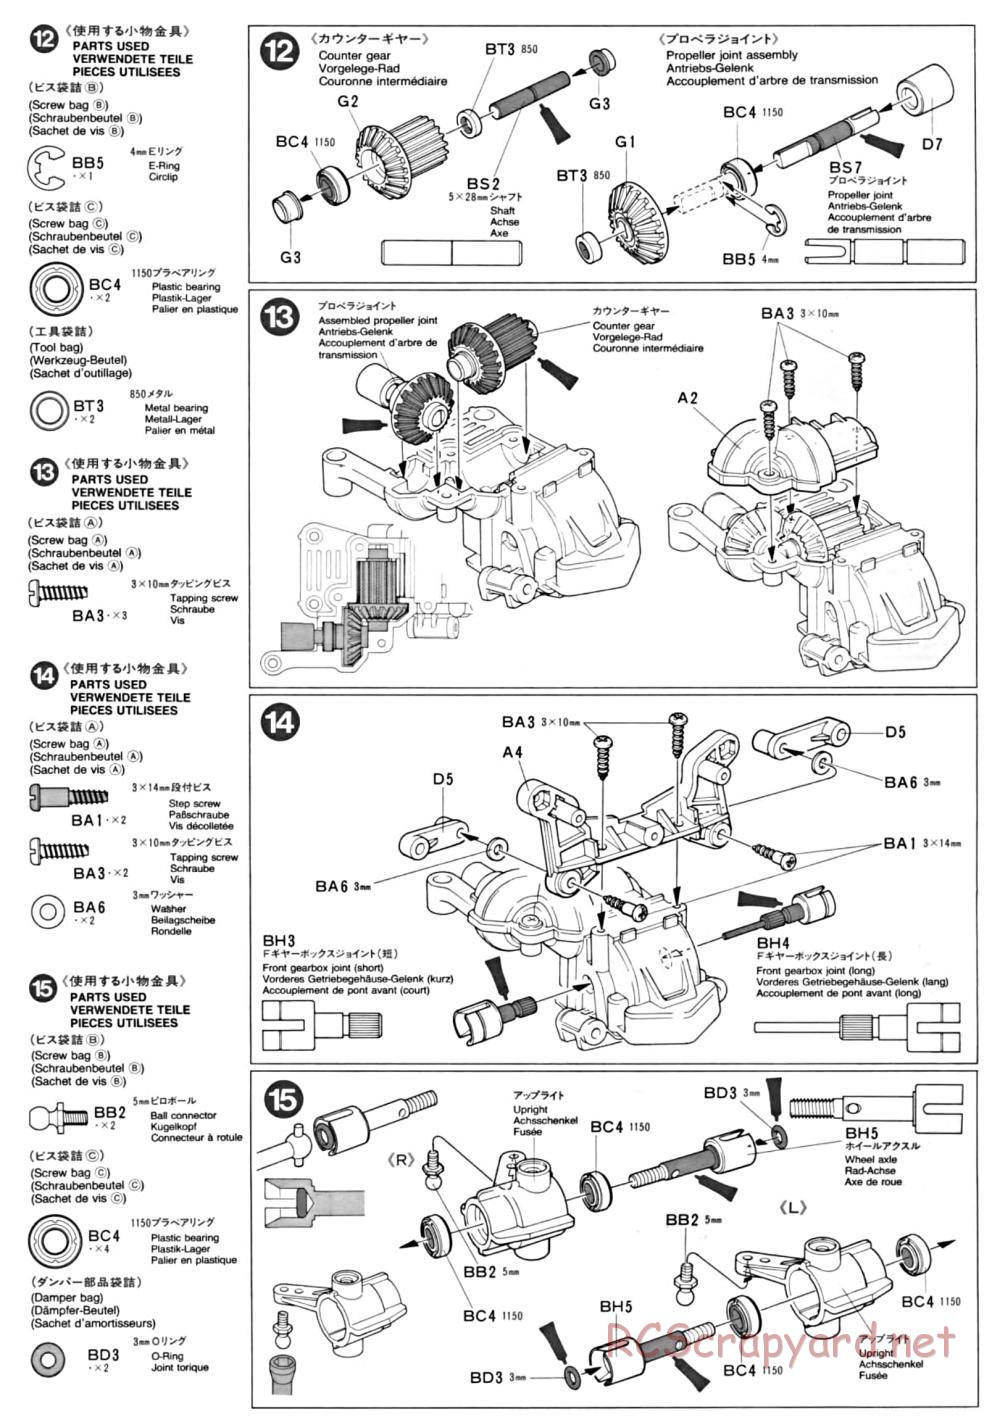 Tamiya - TA-01 Chassis - Manual - Page 5